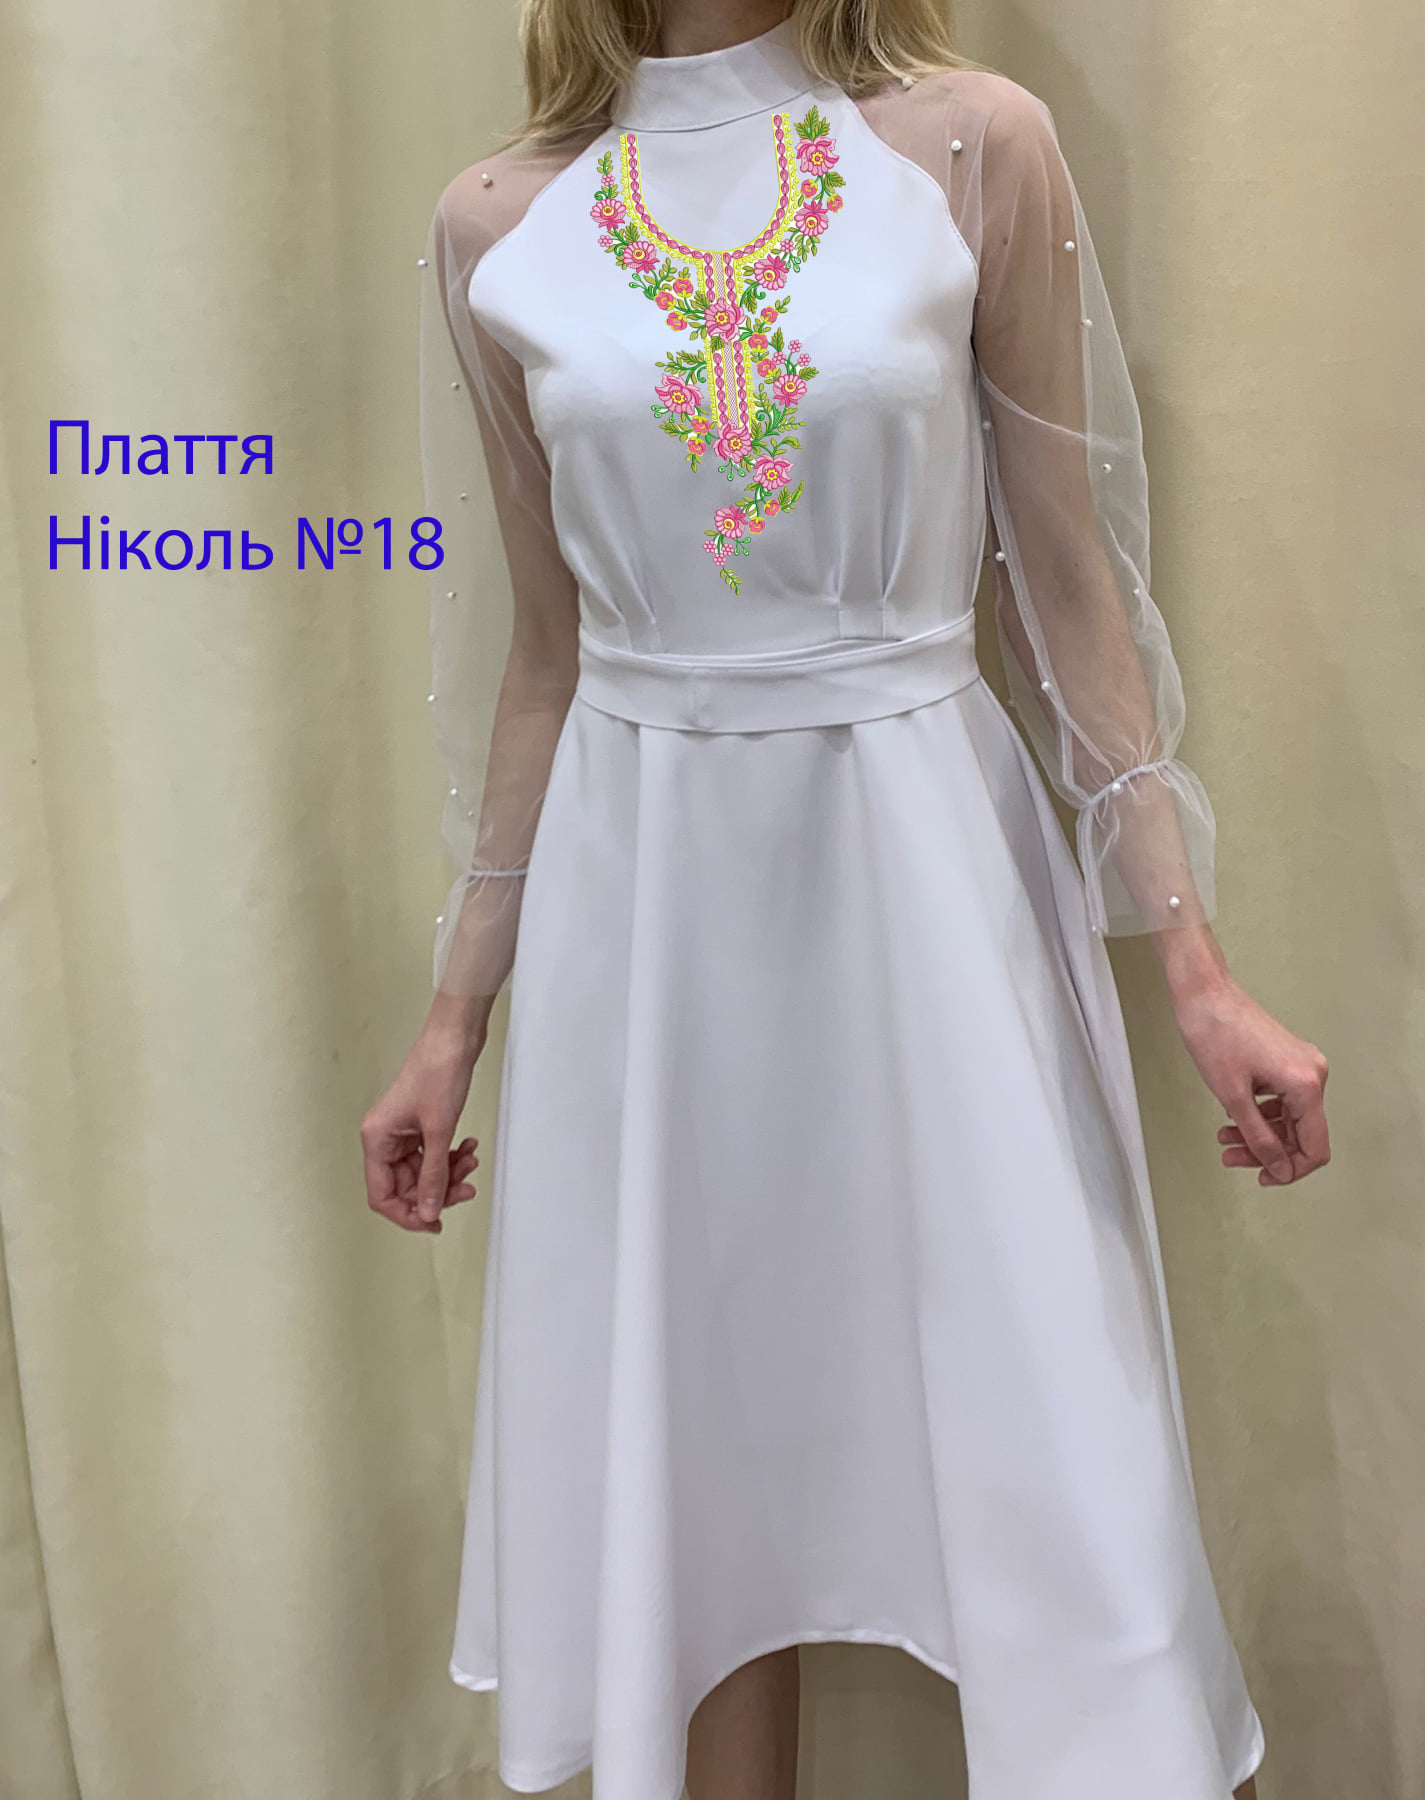 Пошита жіноча сукня для вишивки Ніколь №18